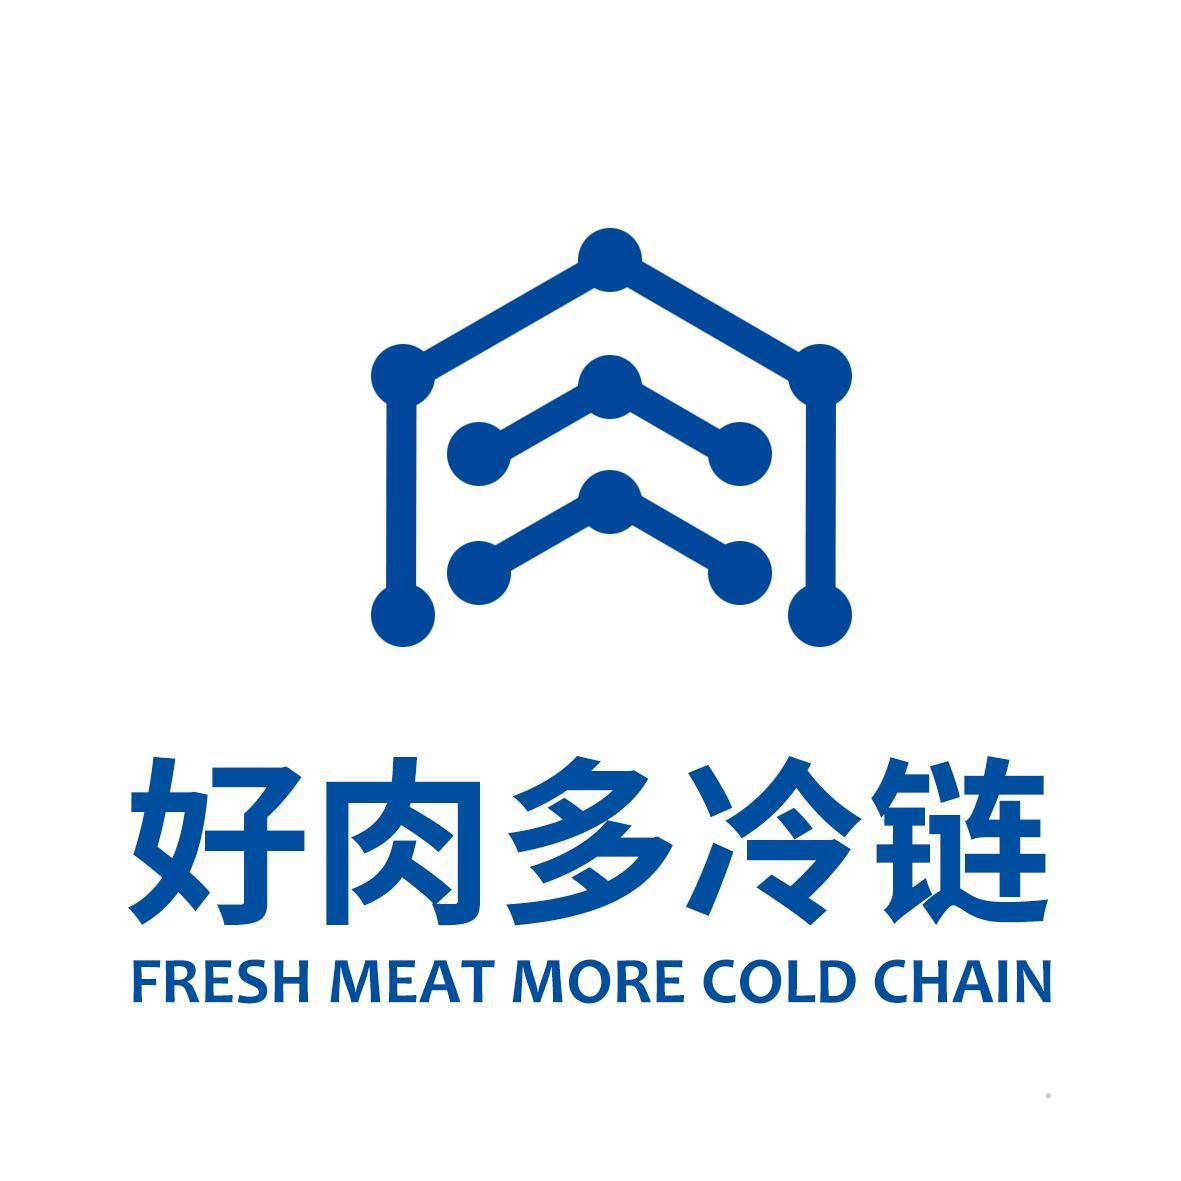 好肉多冷链 FRESH MEAT MORE COLD CHAIN方便食品